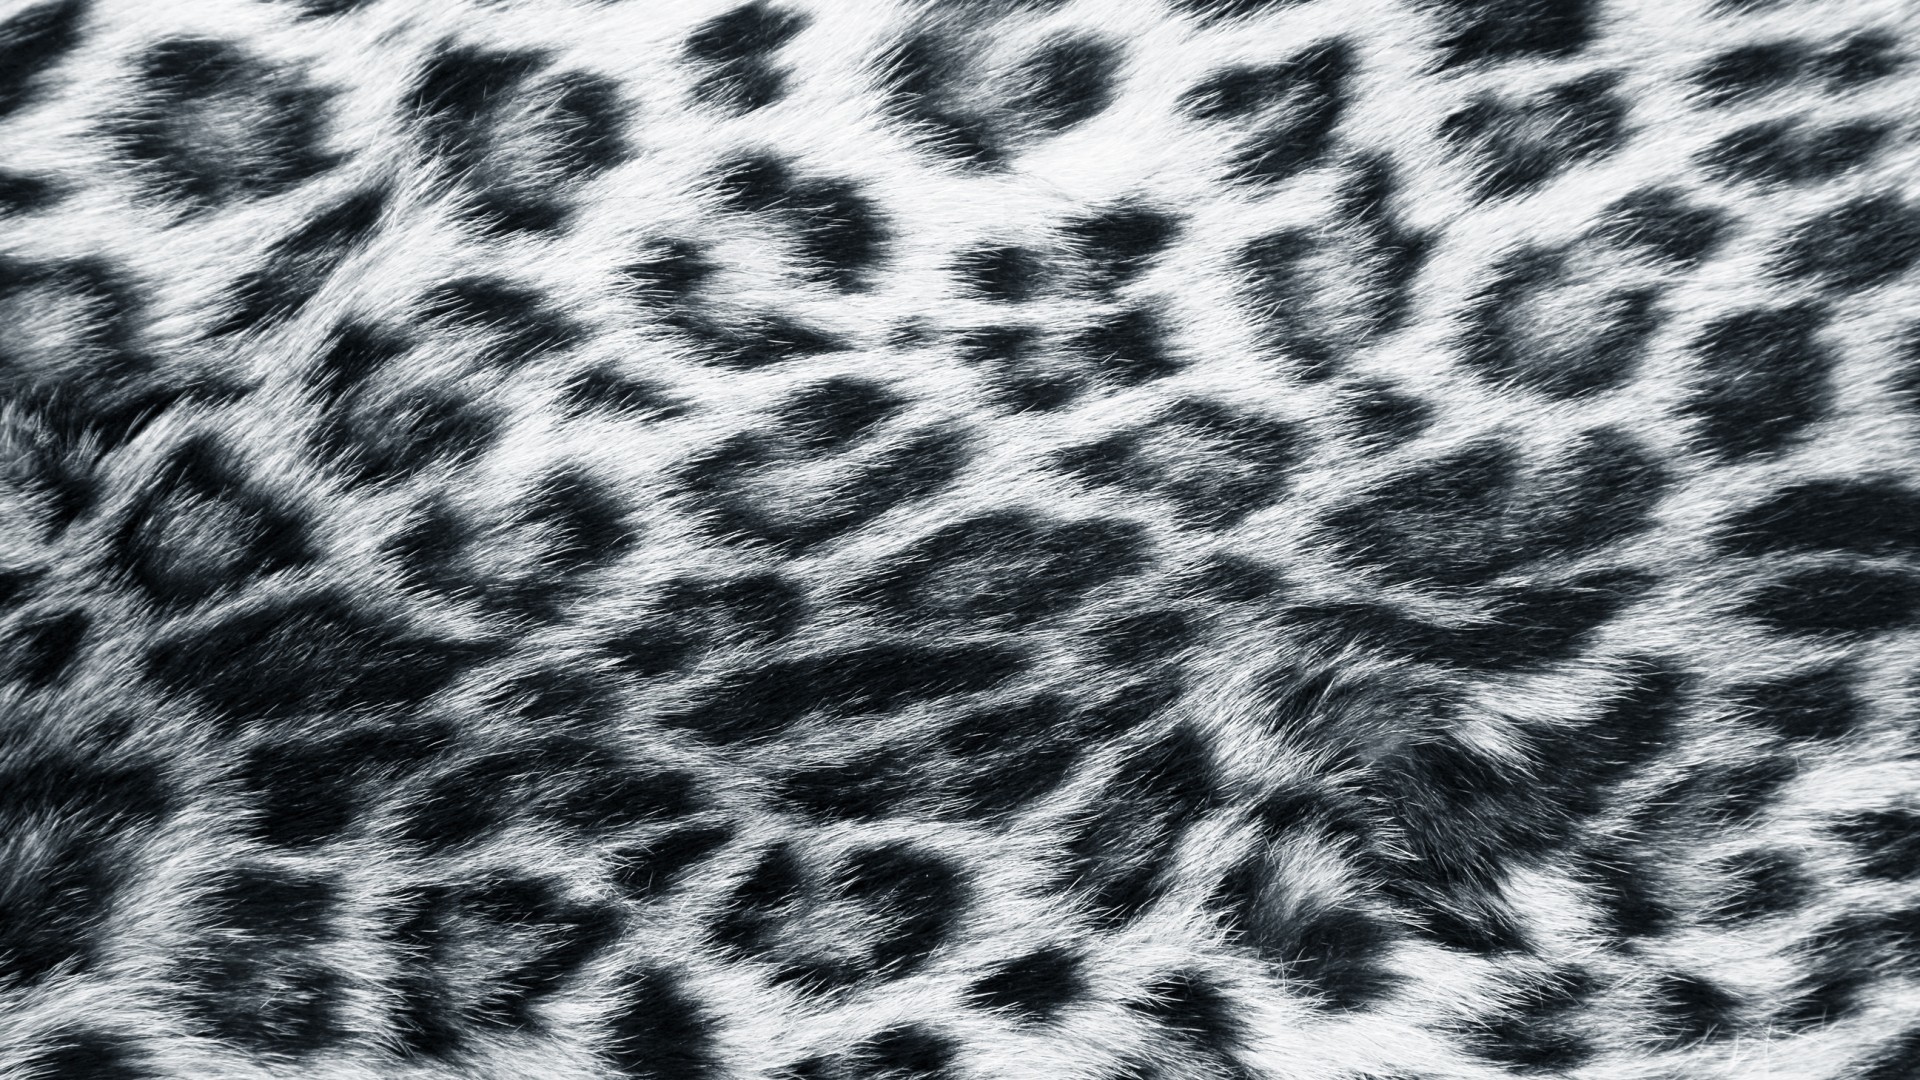 Explore Leopard Print Wallpaper and more